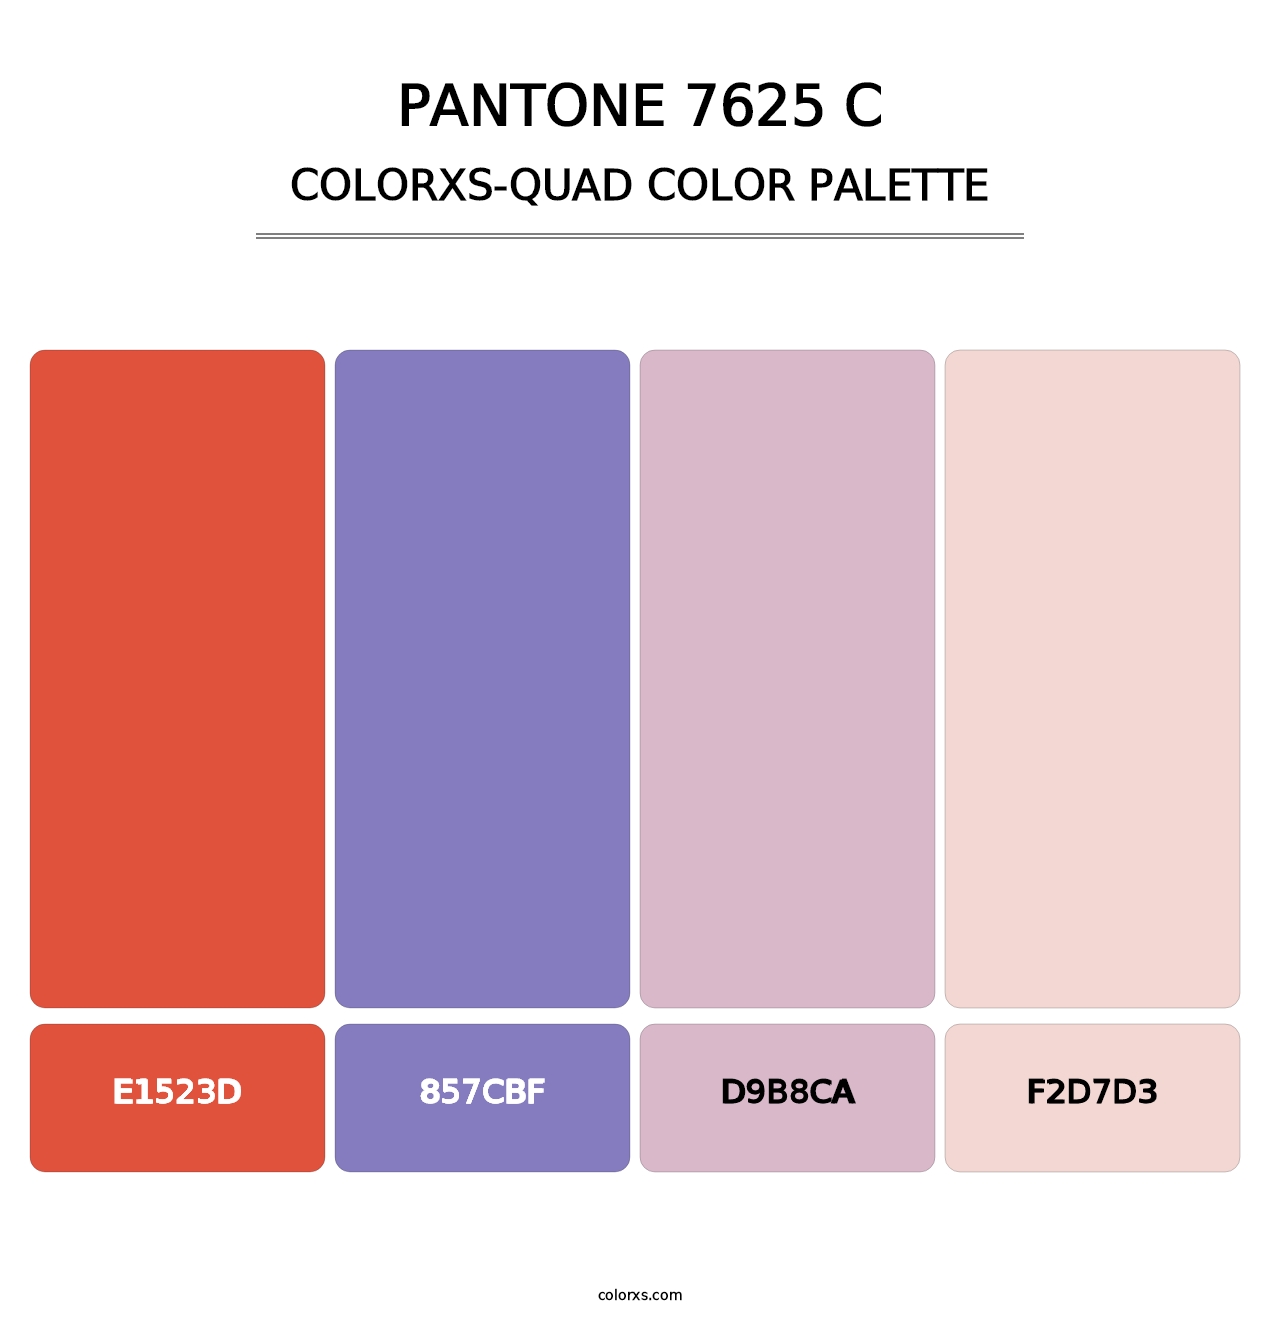 PANTONE 7625 C - Colorxs Quad Palette